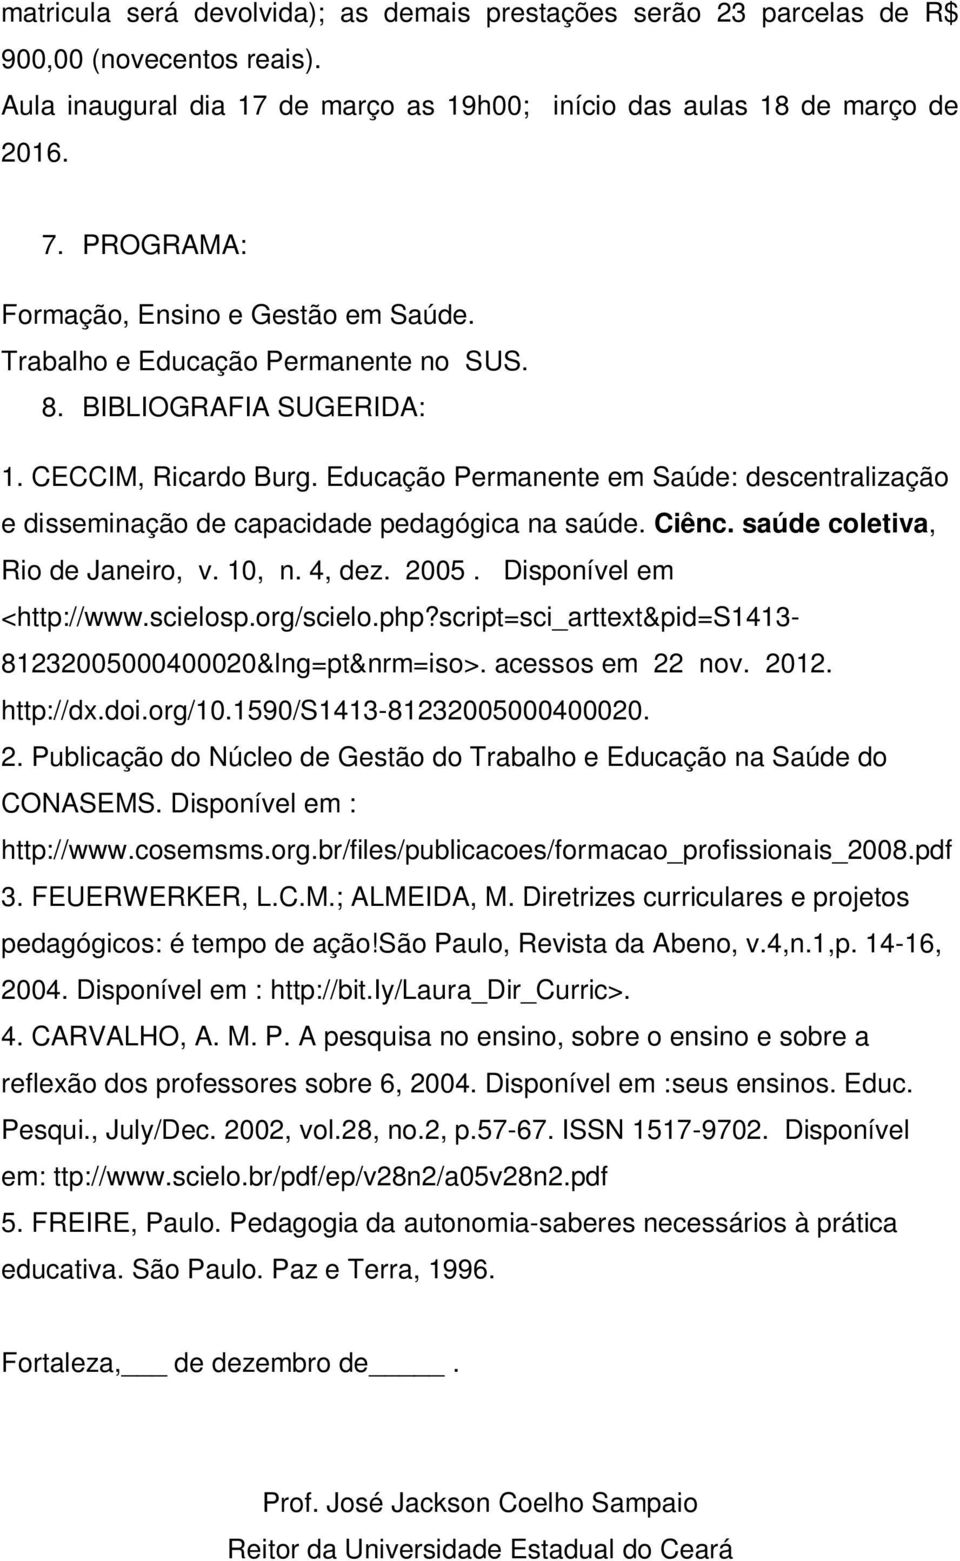 Educação Permanente em Saúde: descentralização e disseminação de capacidade pedagógica na saúde. Ciênc. saúde coletiva, Rio de Janeiro, v. 10, n. 4, dez. 2005. Disponível em <http://www.scielosp.